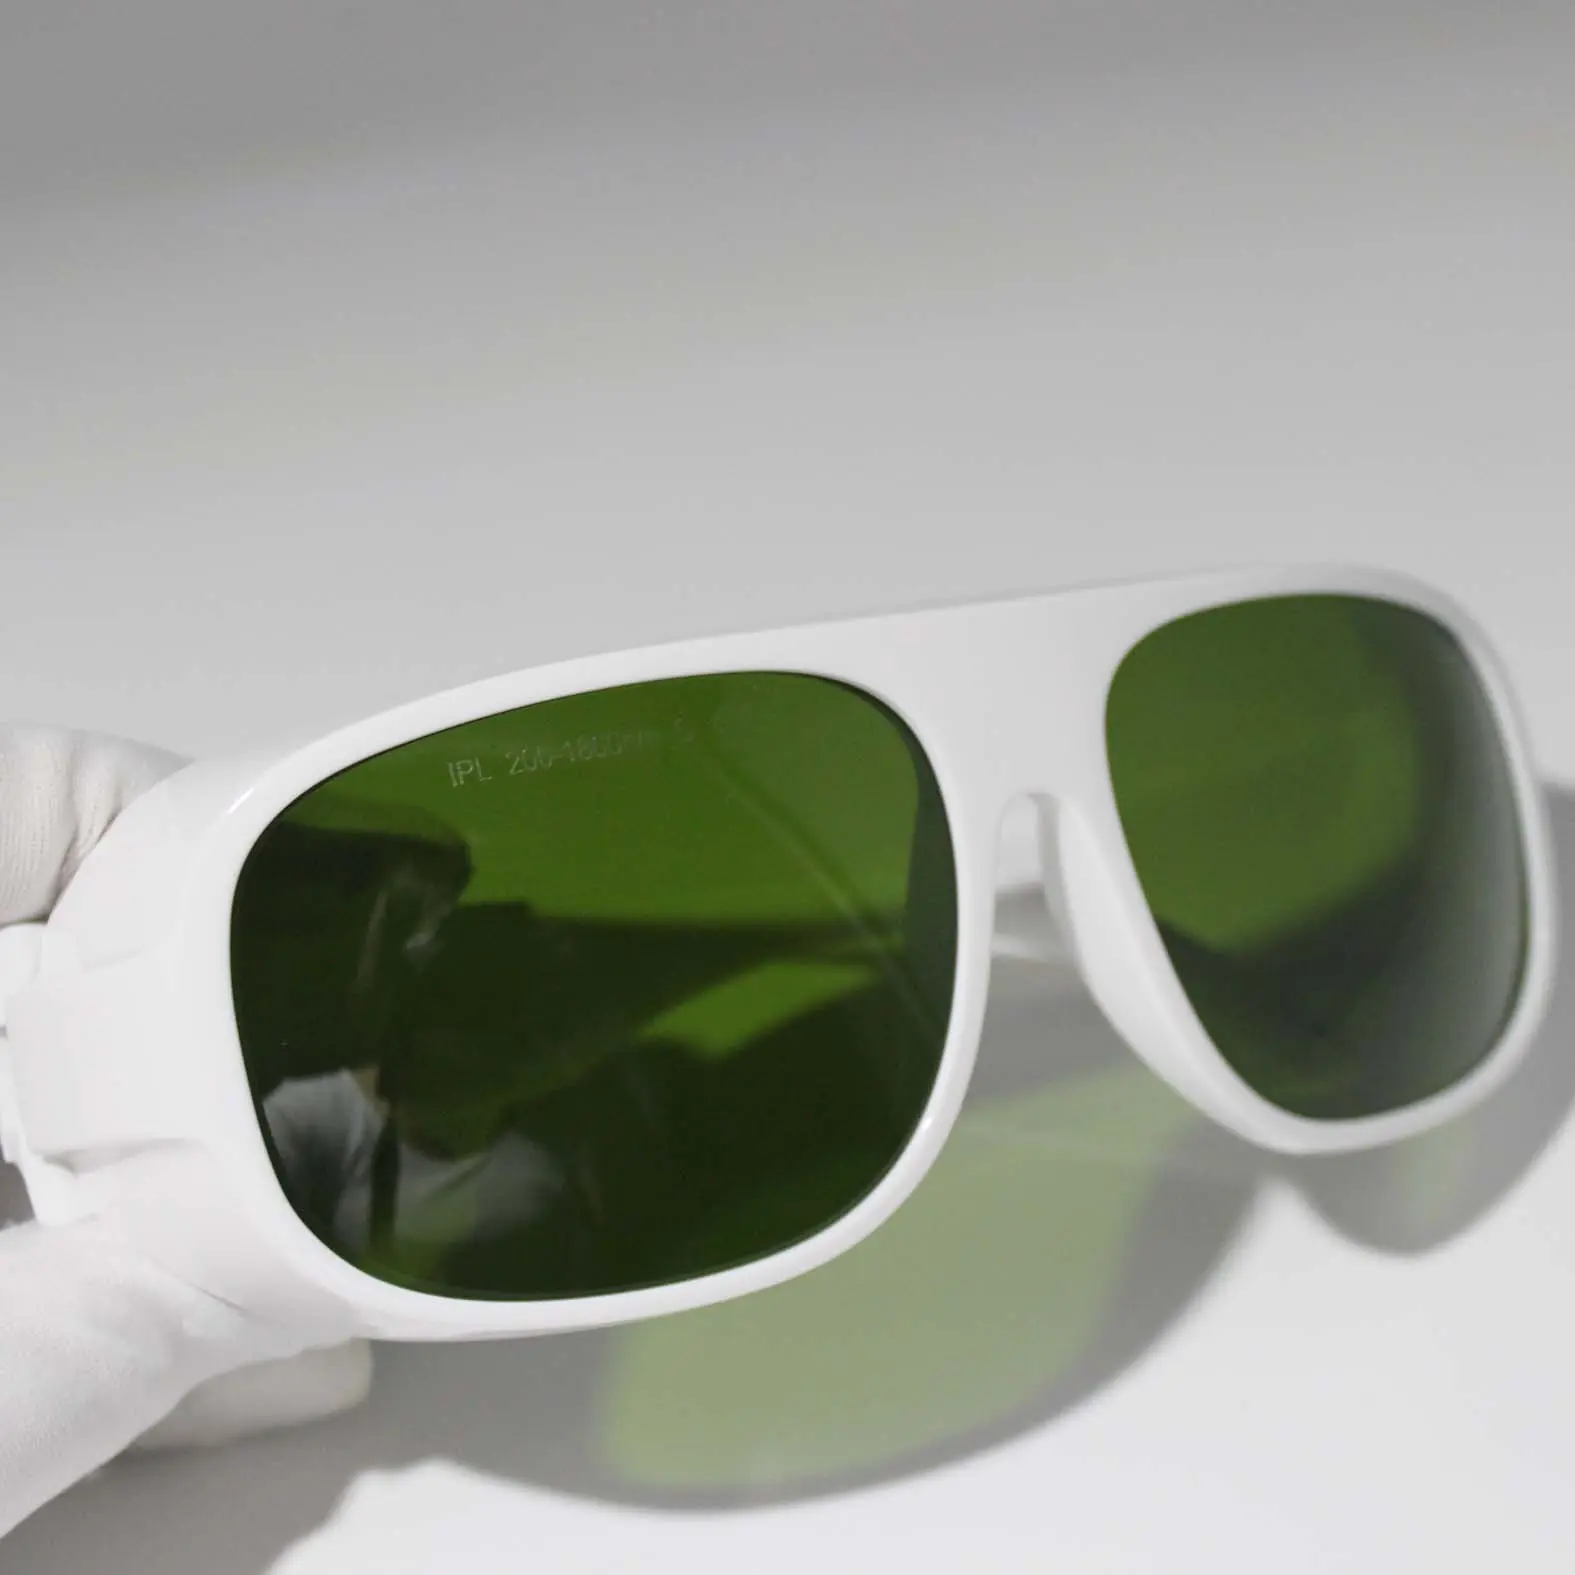 도매 IPL 기계 산업 #52 IPL 200-1400nm 투과율 10% 레이저 보호 안경